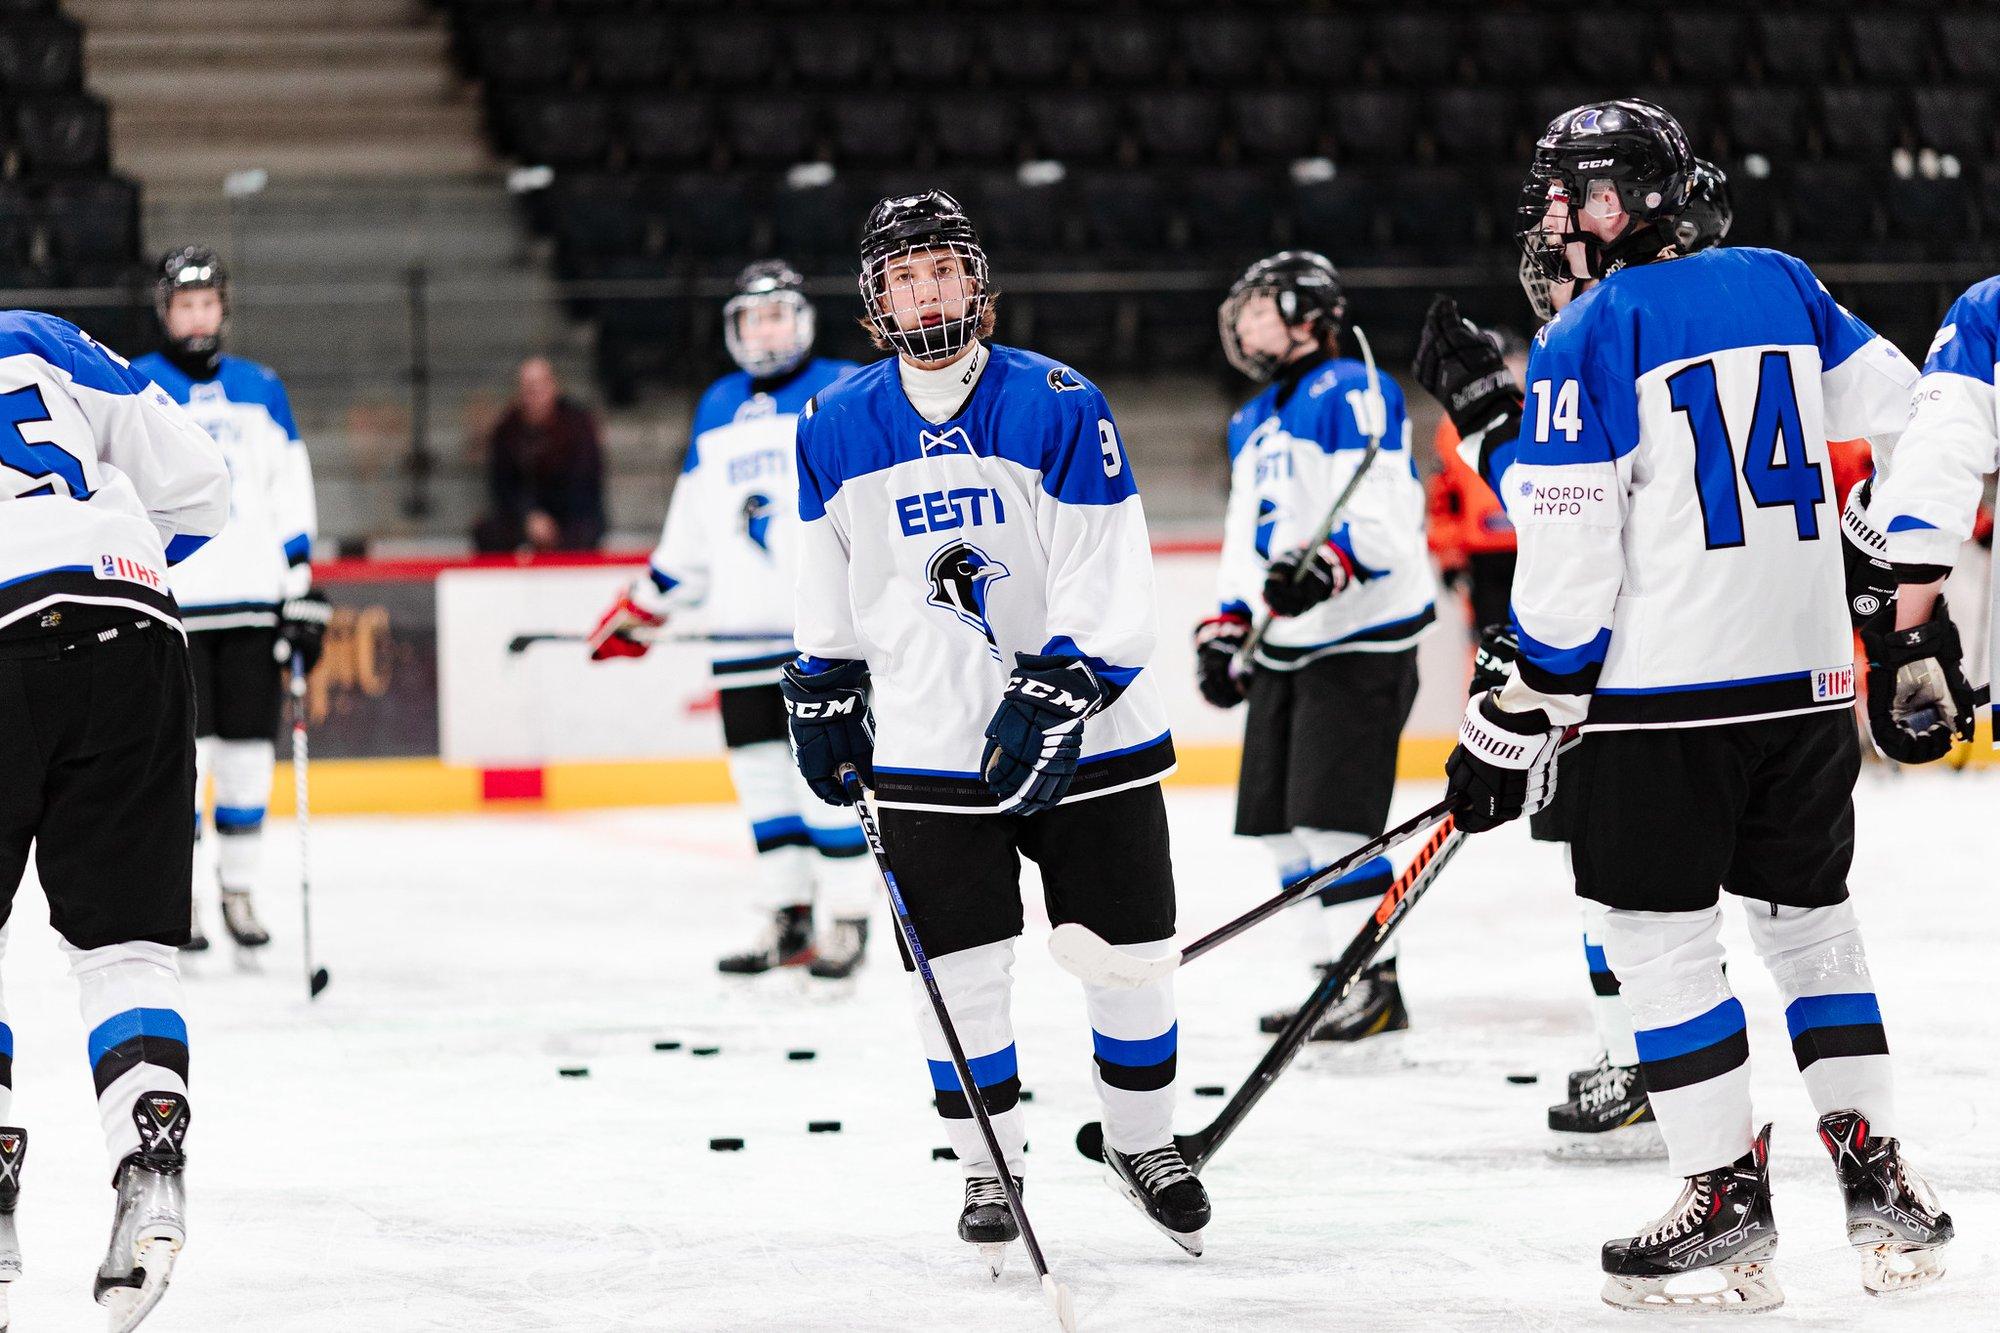 ЧМ среди юниоров: сборная Эстонии по хоккею едва не упустила победу над Южной Кореей